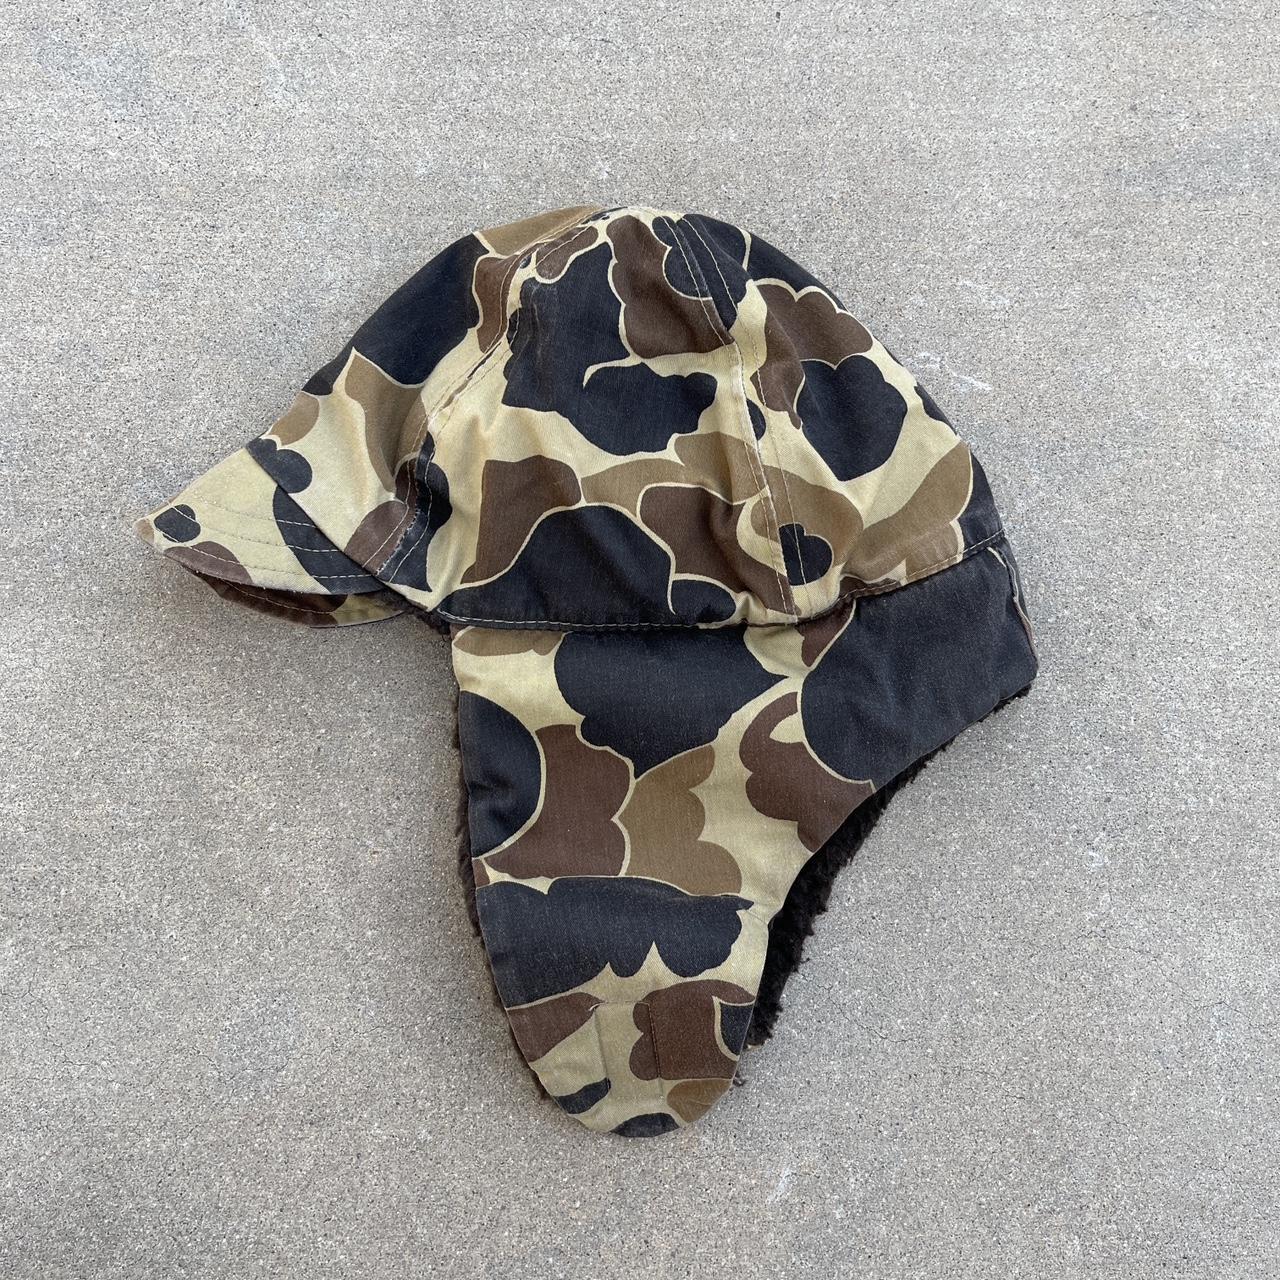 Camouflage Supreme hat. Brand-new literally worn - Depop